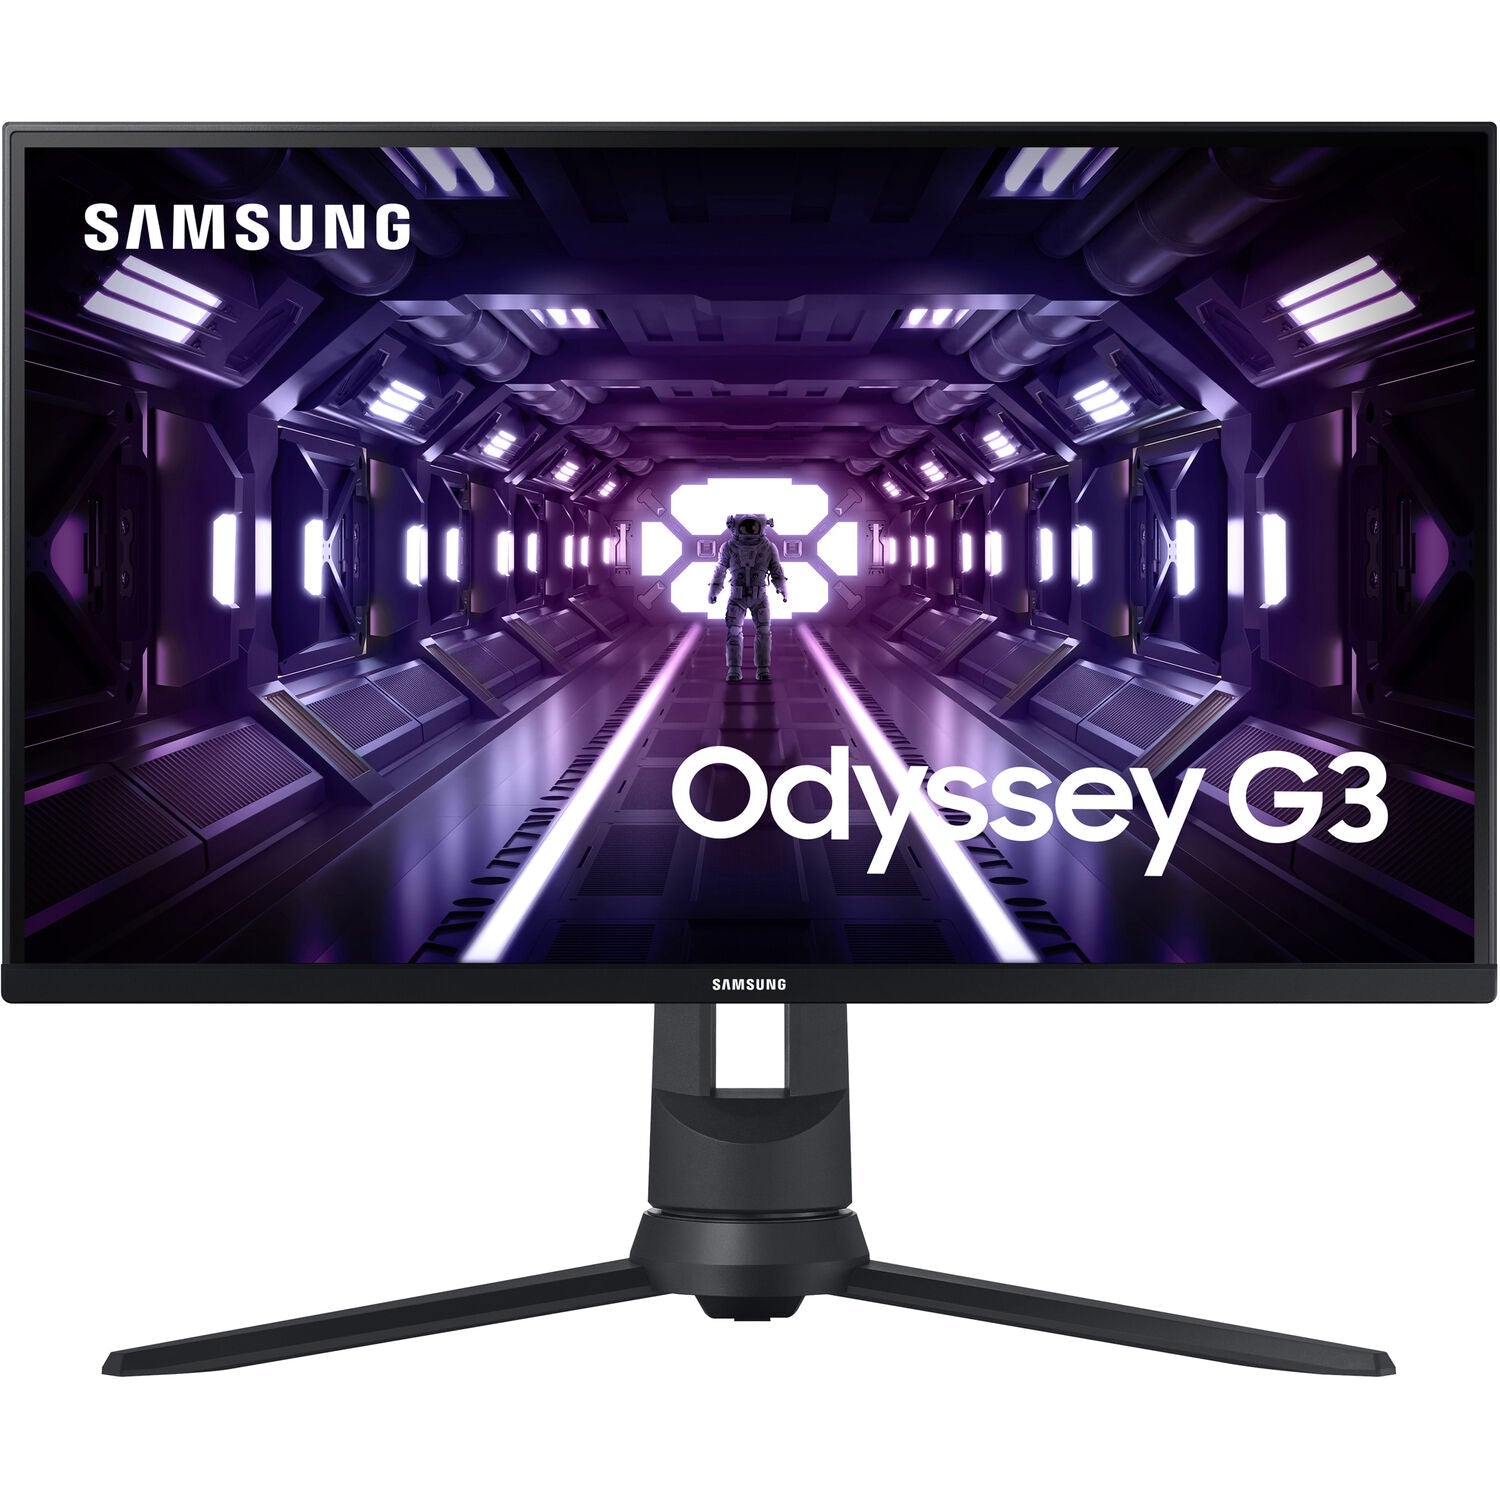 Samsung LF24G35TFWNXZA-RB 24" Odyssey G3 Monitor 1920 x 1080 144Hz - Certified Refurbished